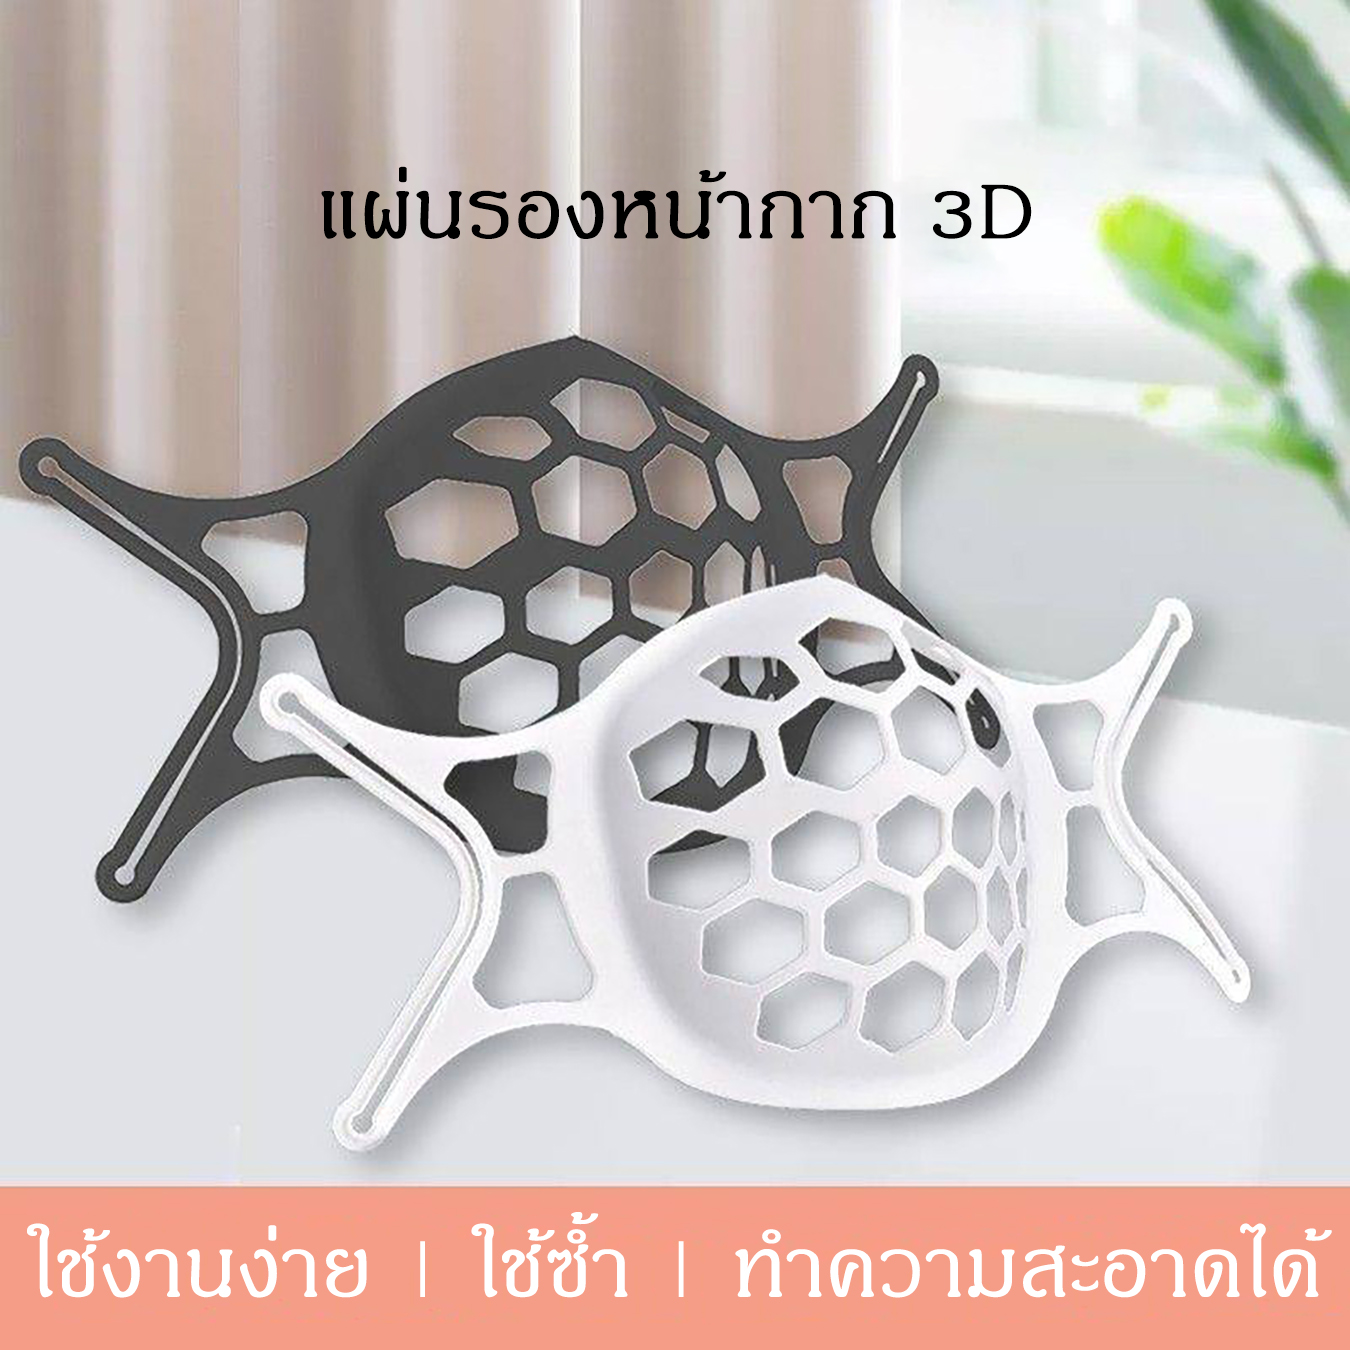 Mask Holder อุปกรณ์ช่วยหายใจ ระบายอากาศ ที่รองหน้ากาก 3D ที่ครอบรองแมส ป้องกันสิปสติกเลอะแมส แผ่นรองแมส ที่รองหน้ากาก